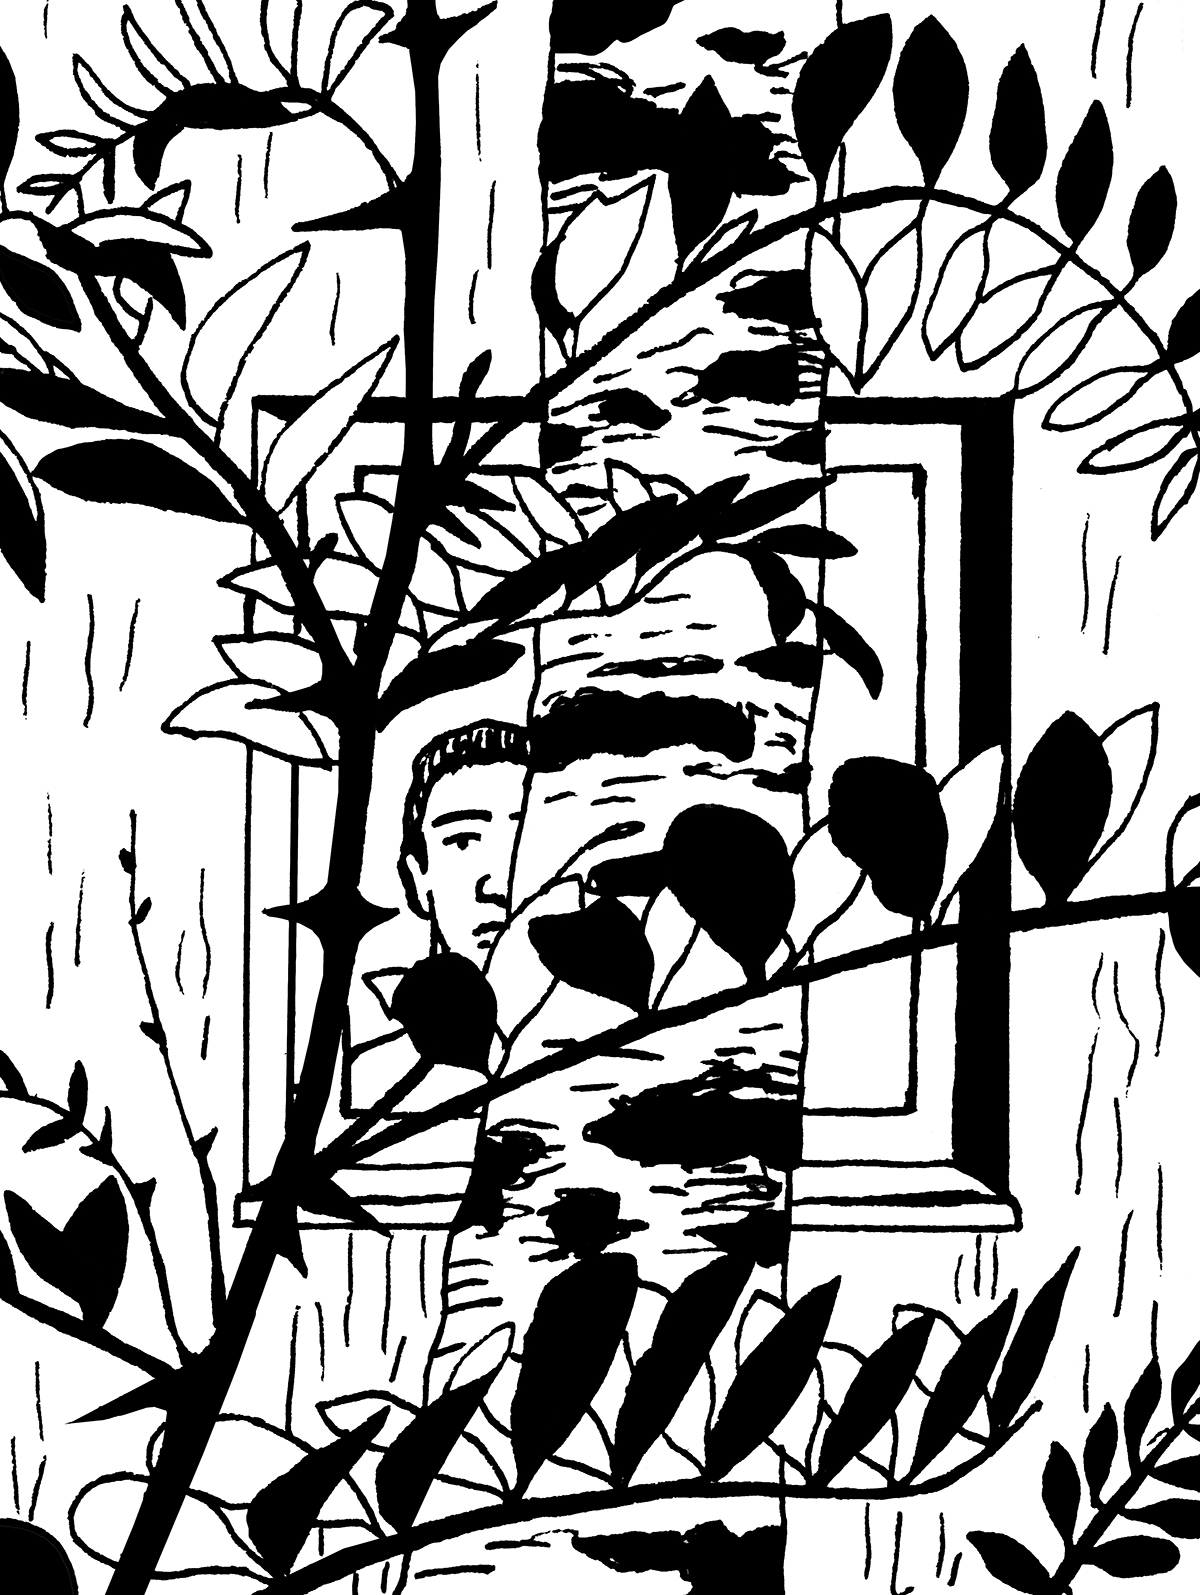 Na pierwszym planie liście młodej robinii akacjowej. Za nimi, zza grubego pnia brzozy, widać pół twarzy wyglądającego przez okno mężczyzny